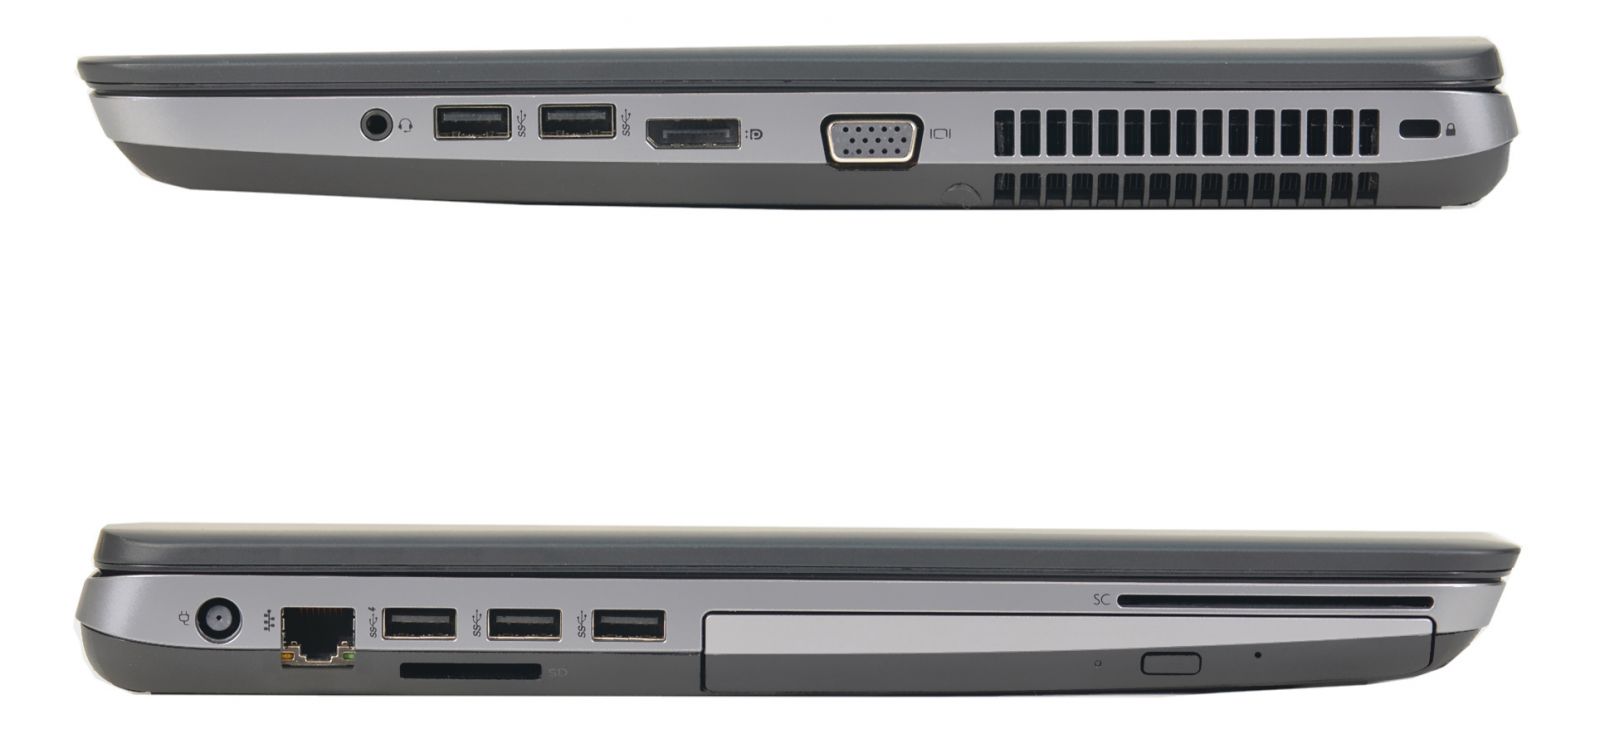 Bảo mật HP Probook 650G1 an toàn